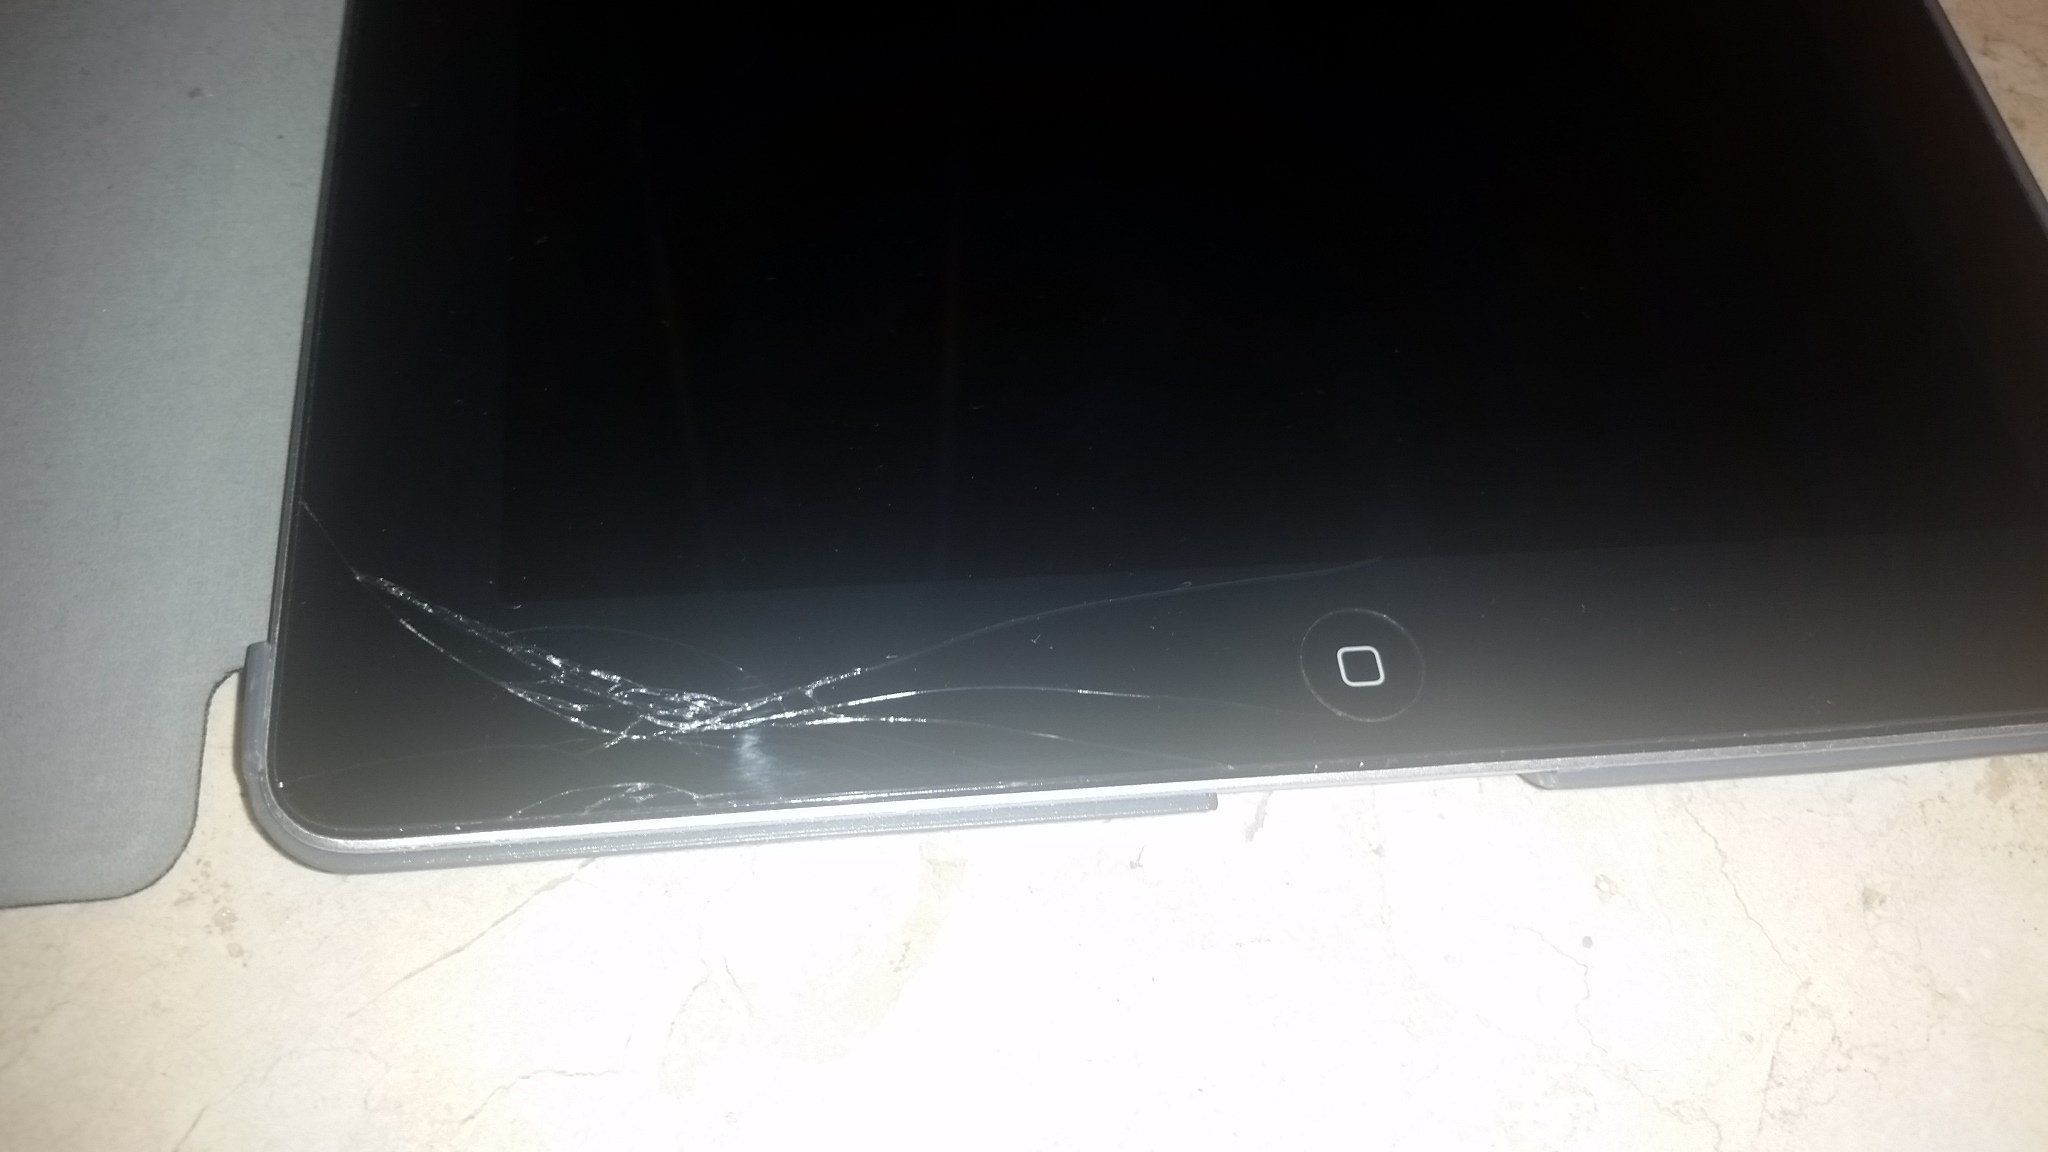 Test : réparation d'écran iPad cassé chez iAllRepair